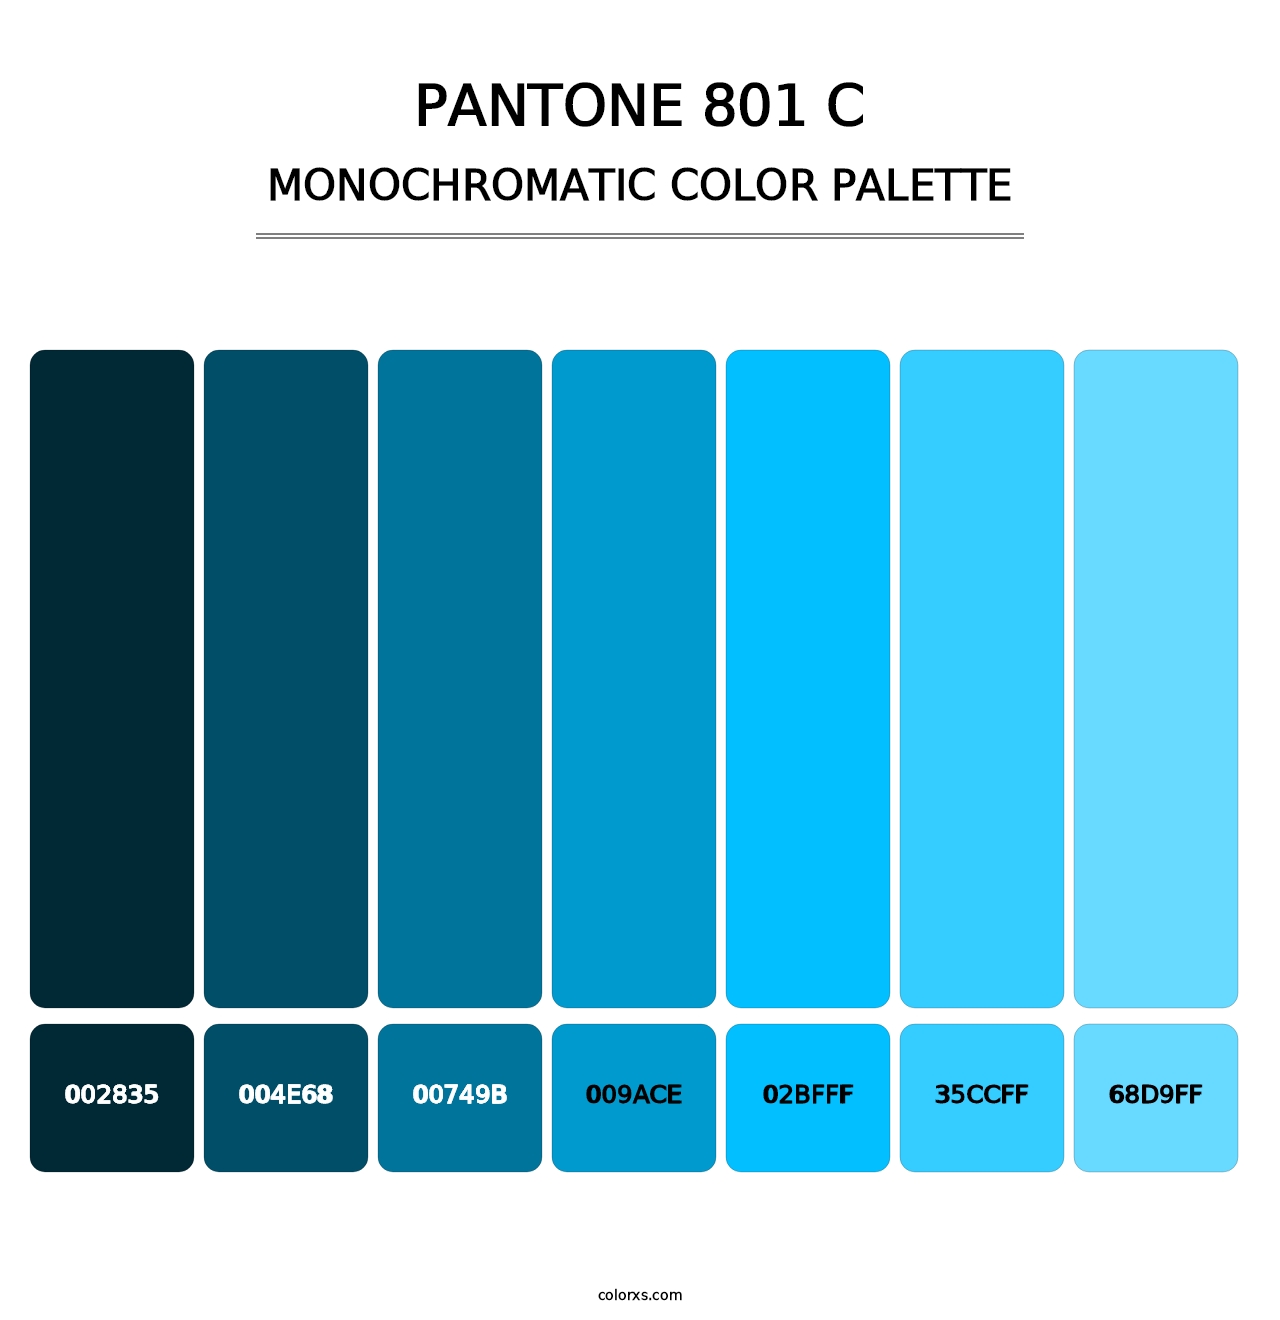 PANTONE 801 C - Monochromatic Color Palette